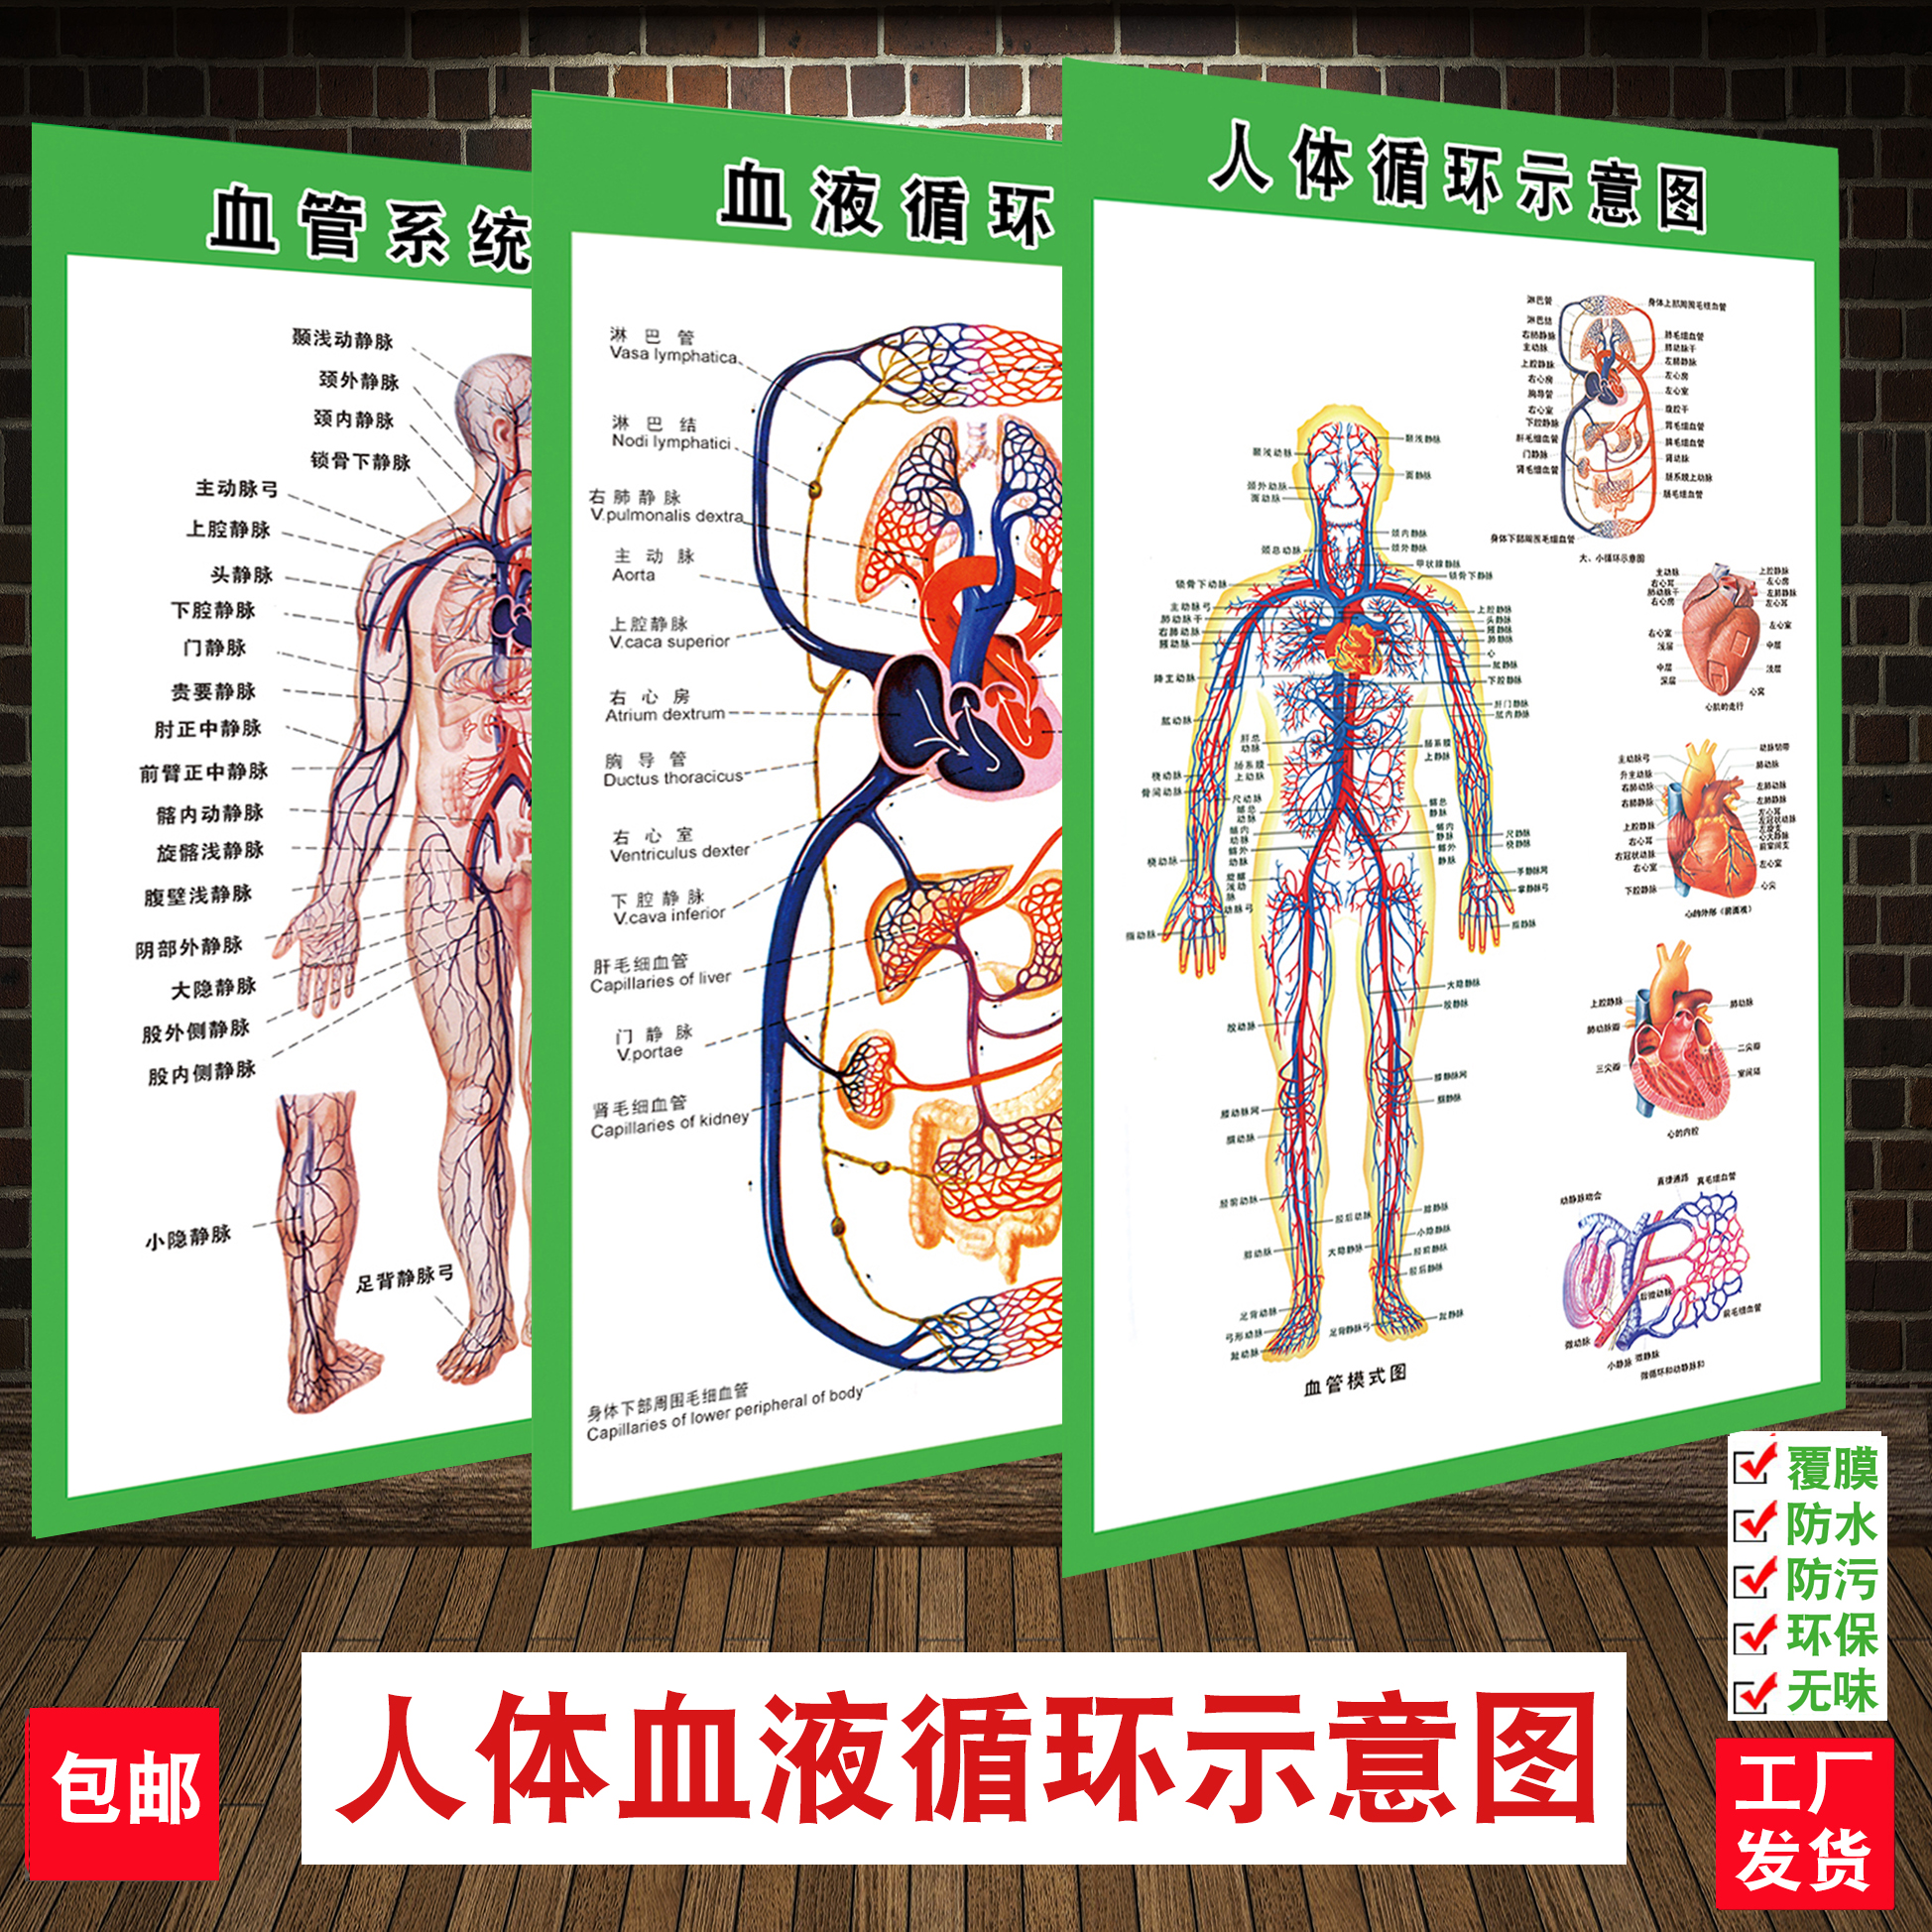 血液系统人体循环示意图人体解剖肌肉骨骼神经血管医院挂图展板